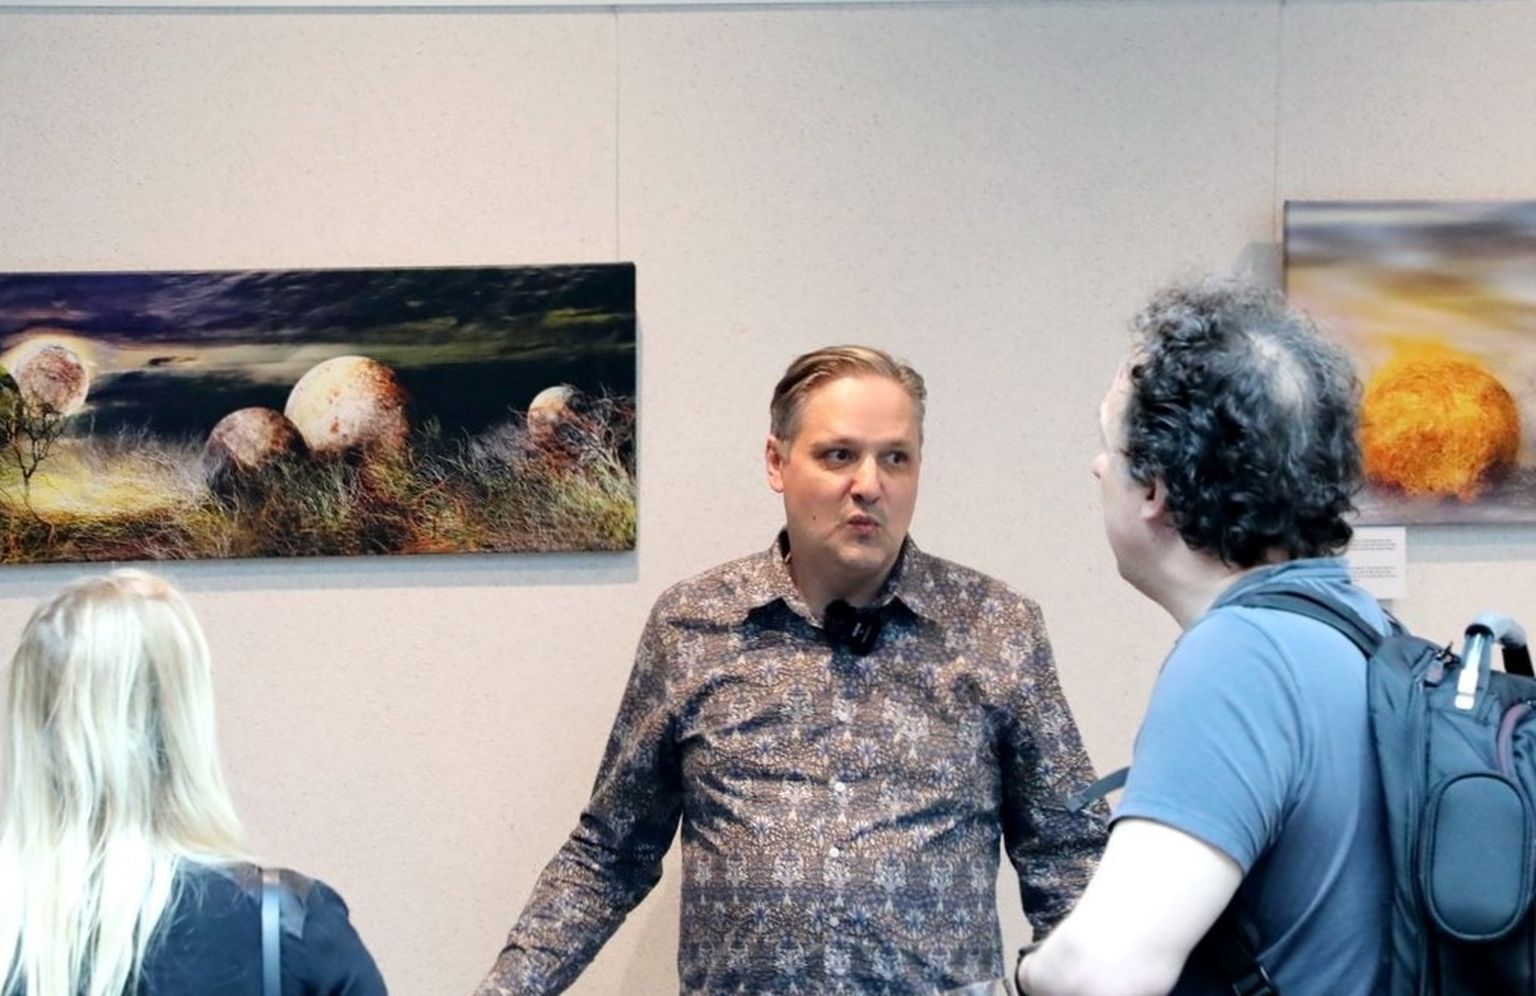 Nerva tutvustab kunstihuvilistele Delta keskuses oma näitust.